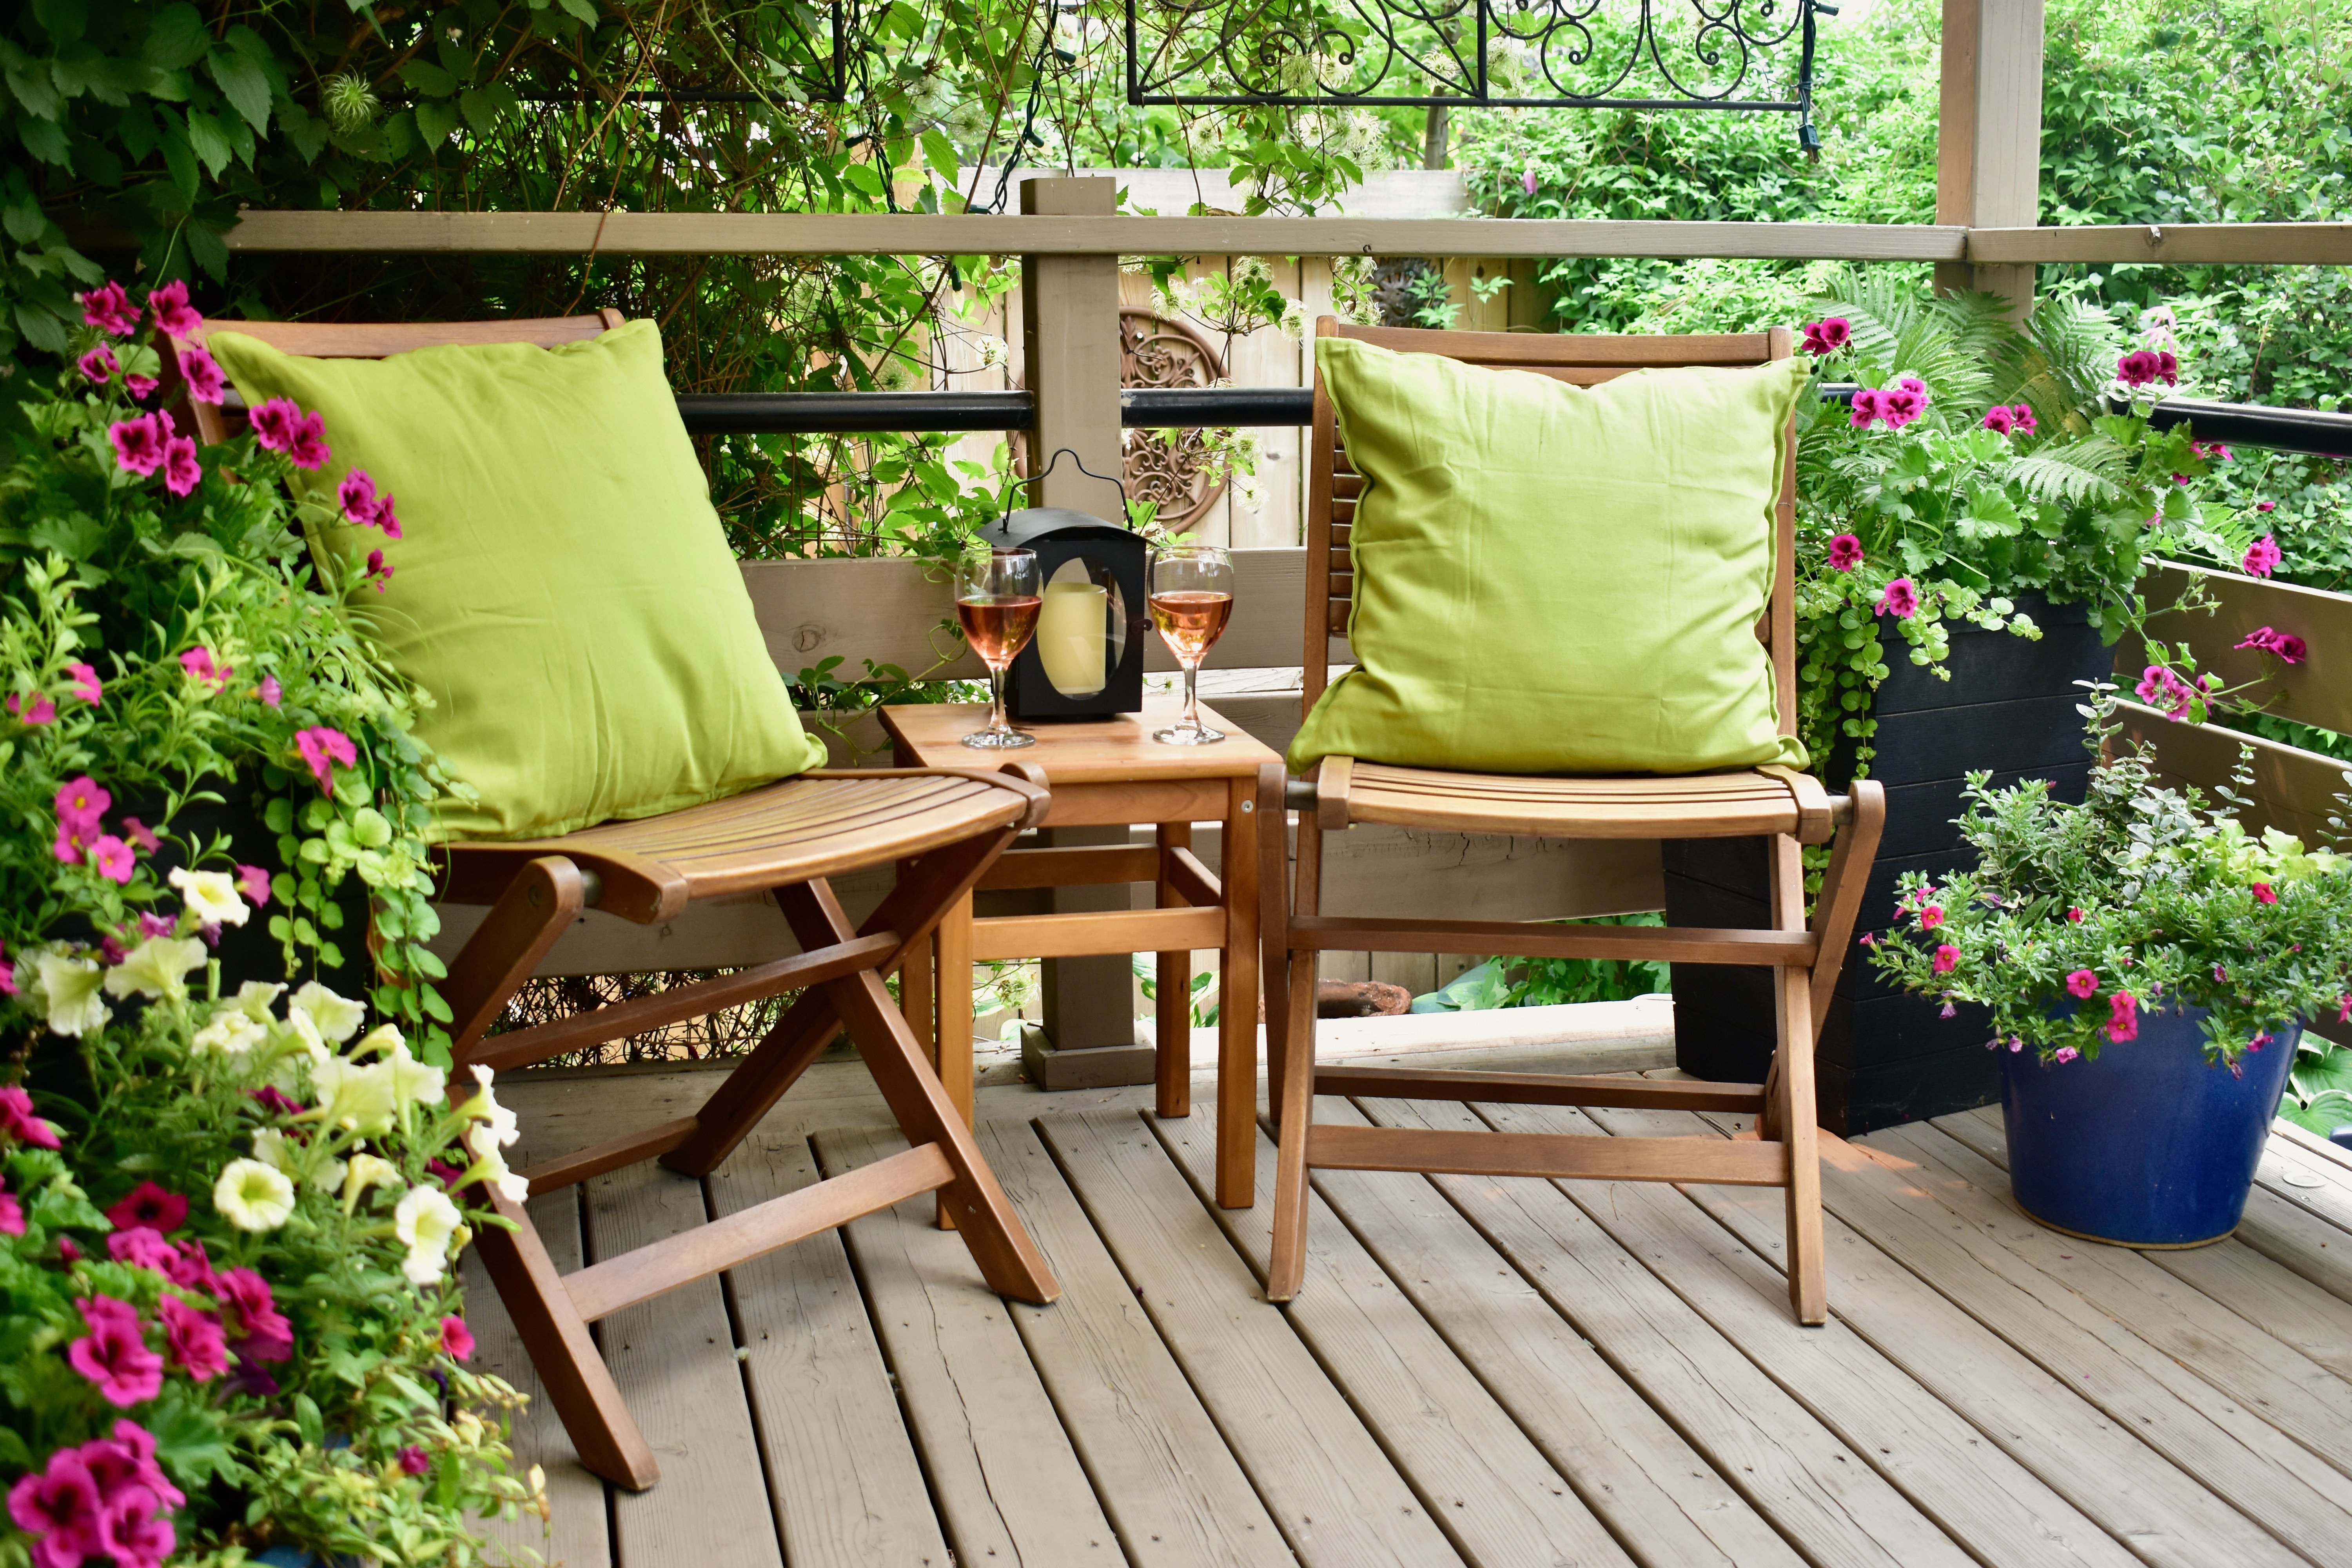 Zwei Gartenstühle aus Holz stehen auf einen Balkon. Auf den Stühlen befindet sich jeweils ein grünes Kissen. Links und rechts neben den Stühlen stehen Blumen.